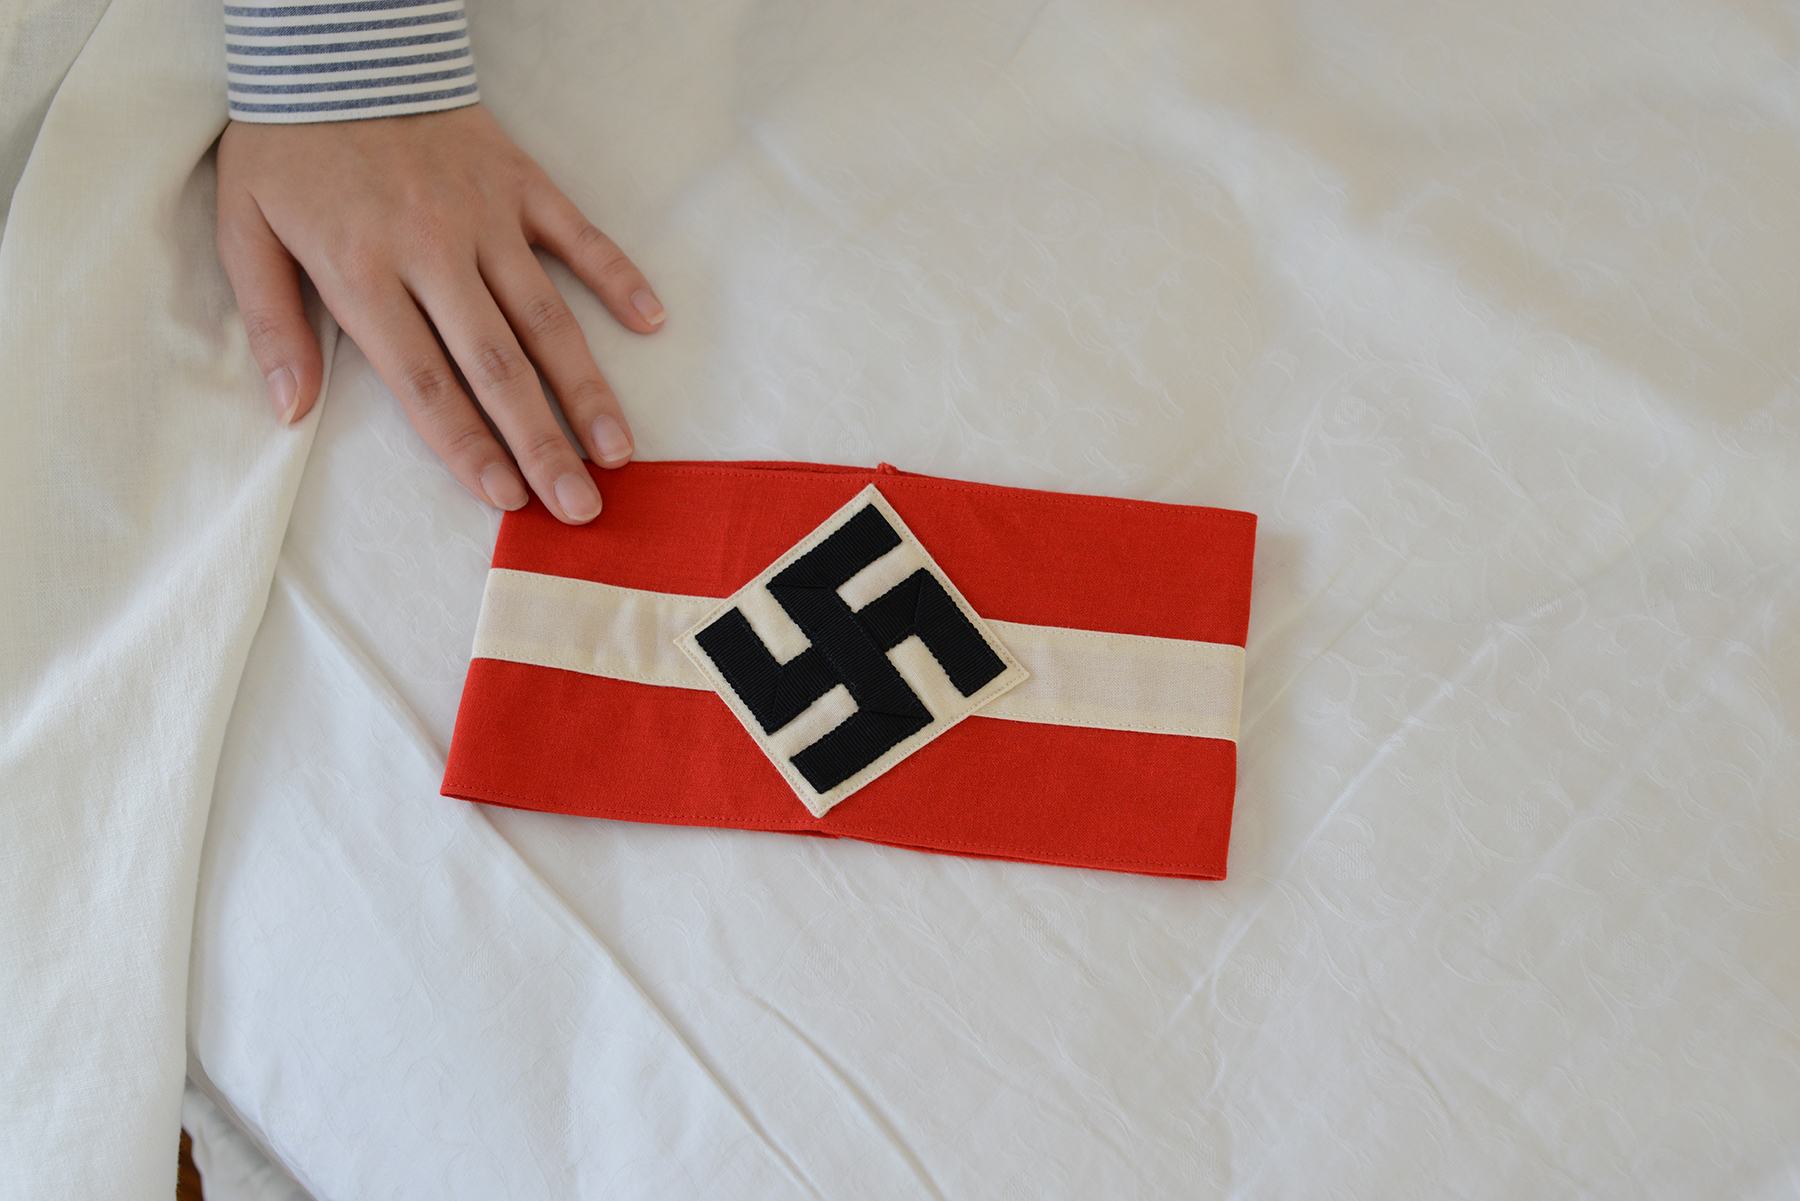 Hitler-Jugend Member's Armband